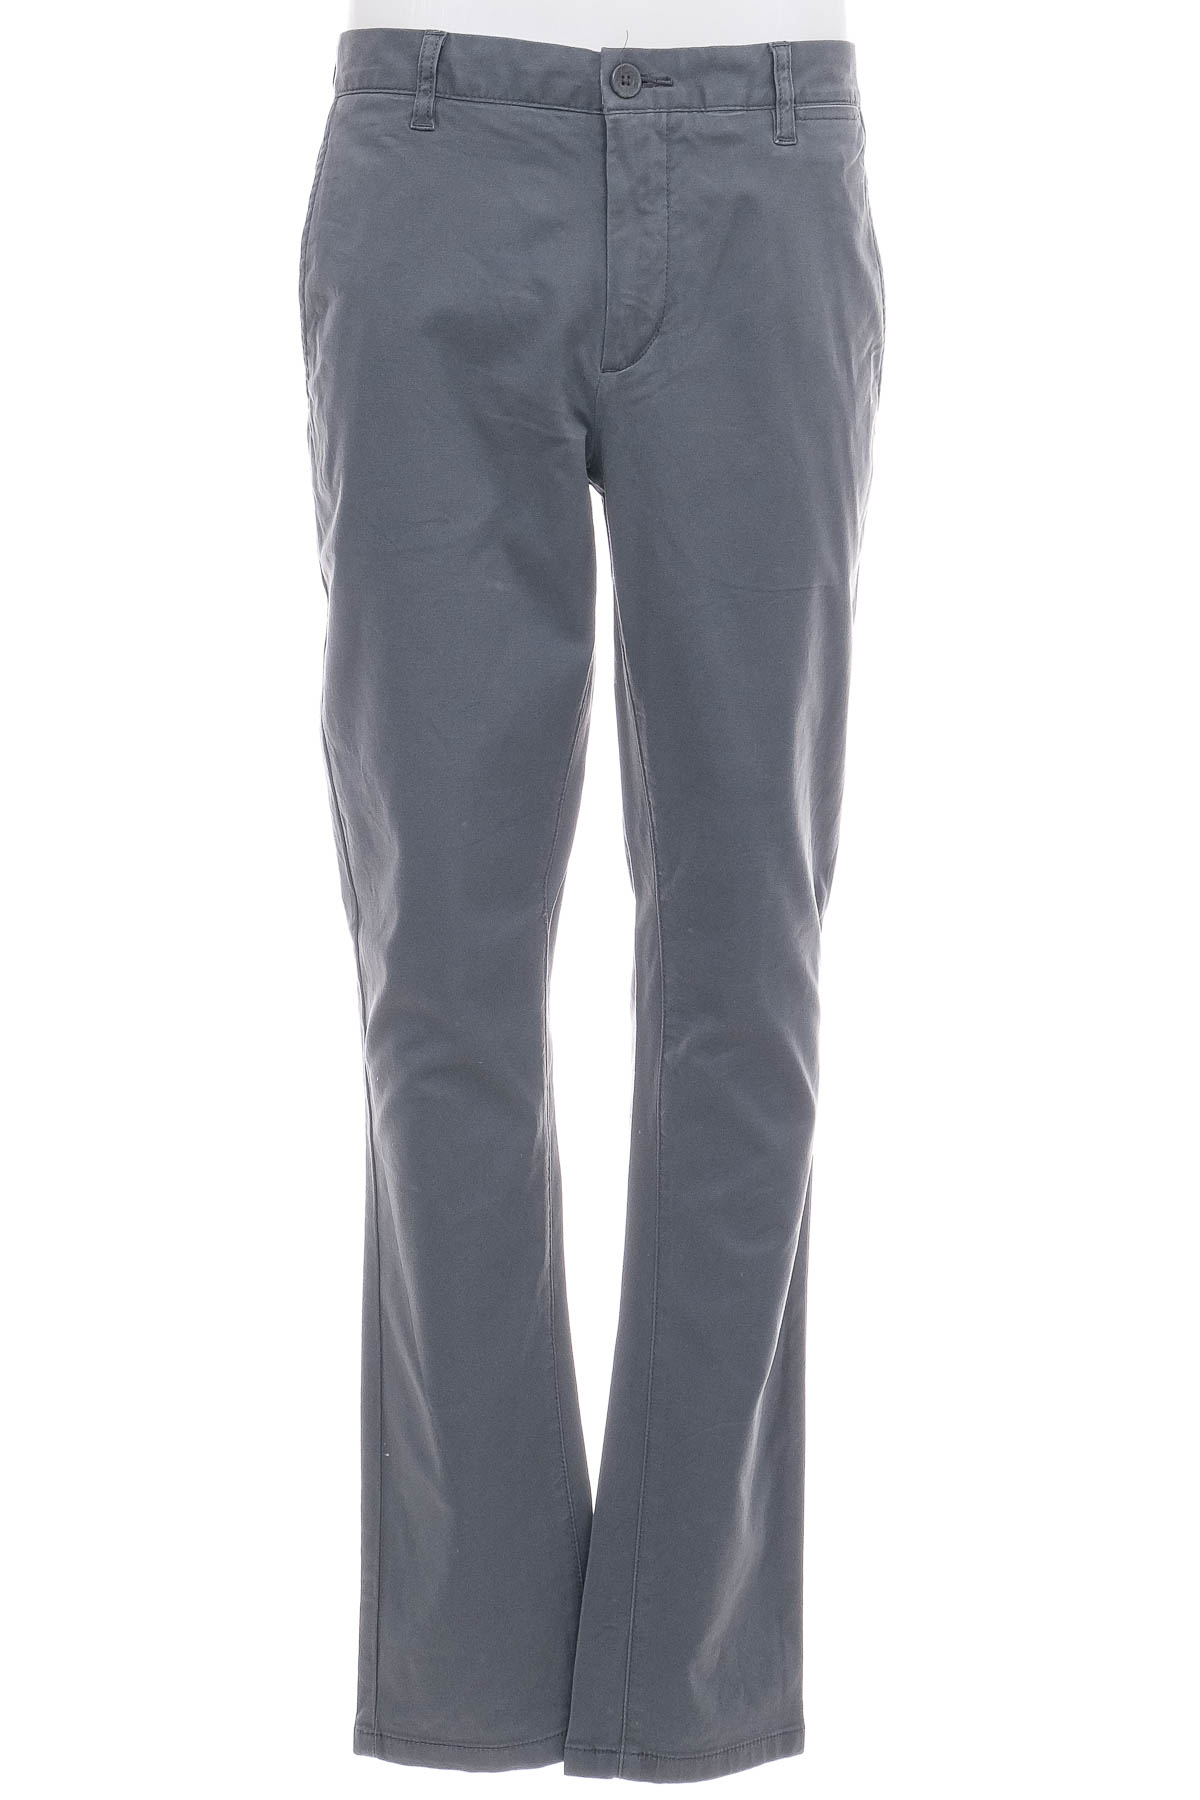 Men's trousers - TCM - 0